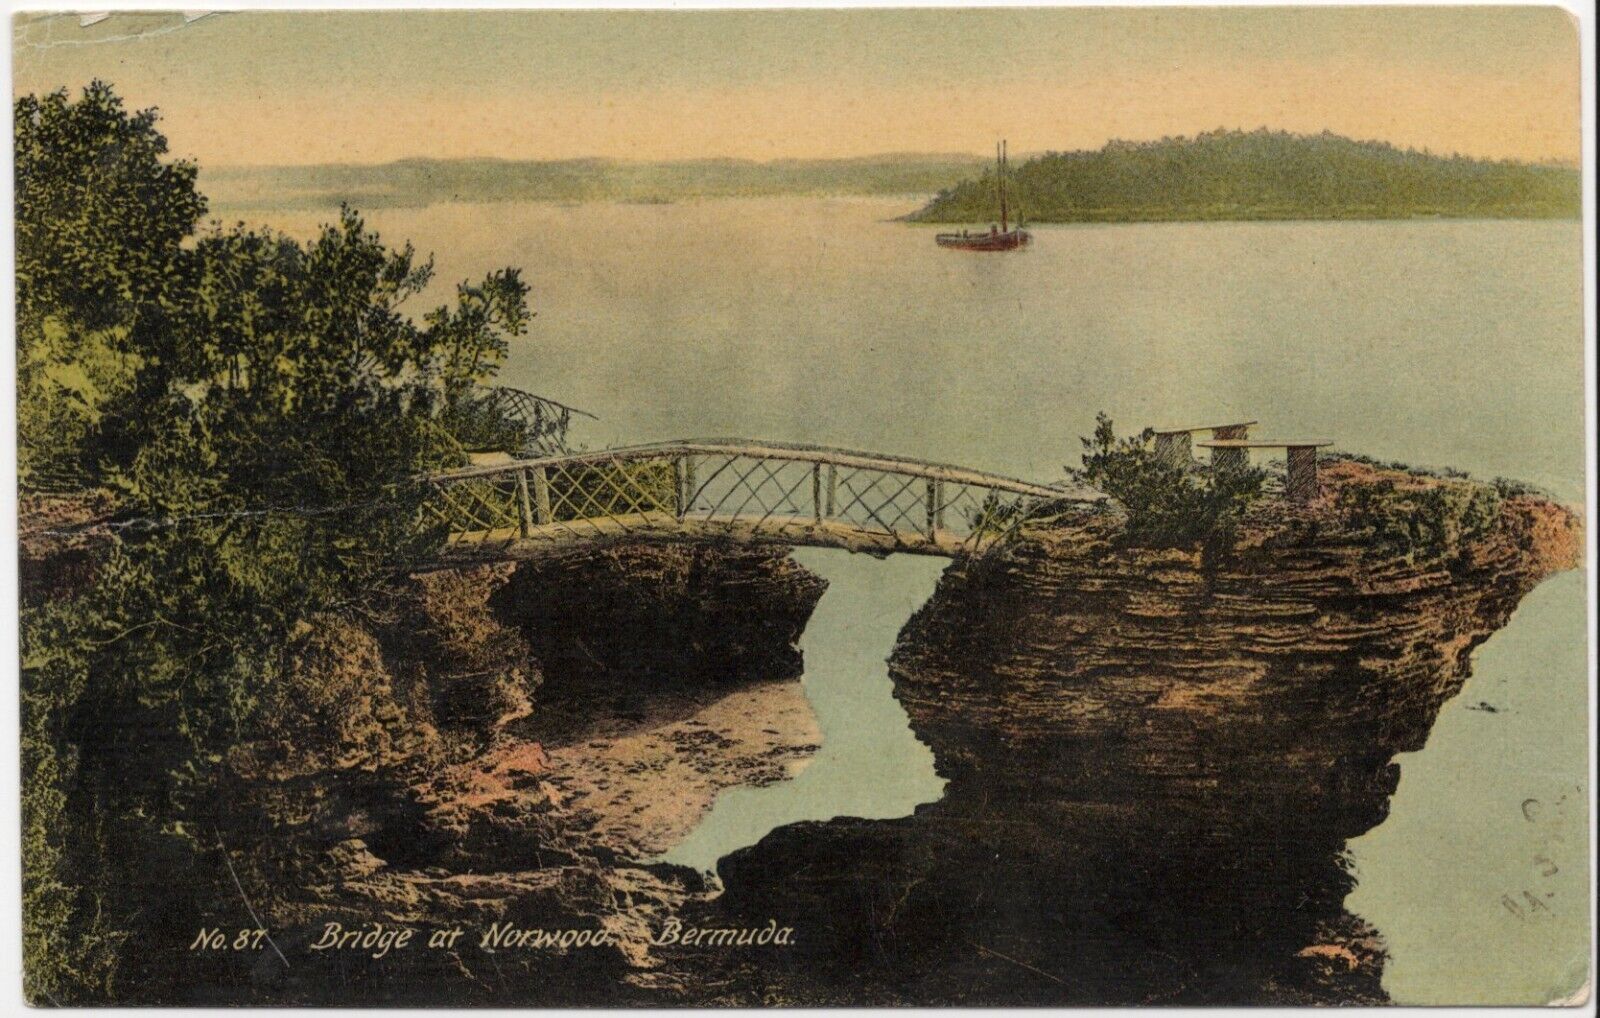 Bridge at Northwood, Bermuda, 1900s Posted Postcard 1/2 d Bermuda Dry Dock Stamp